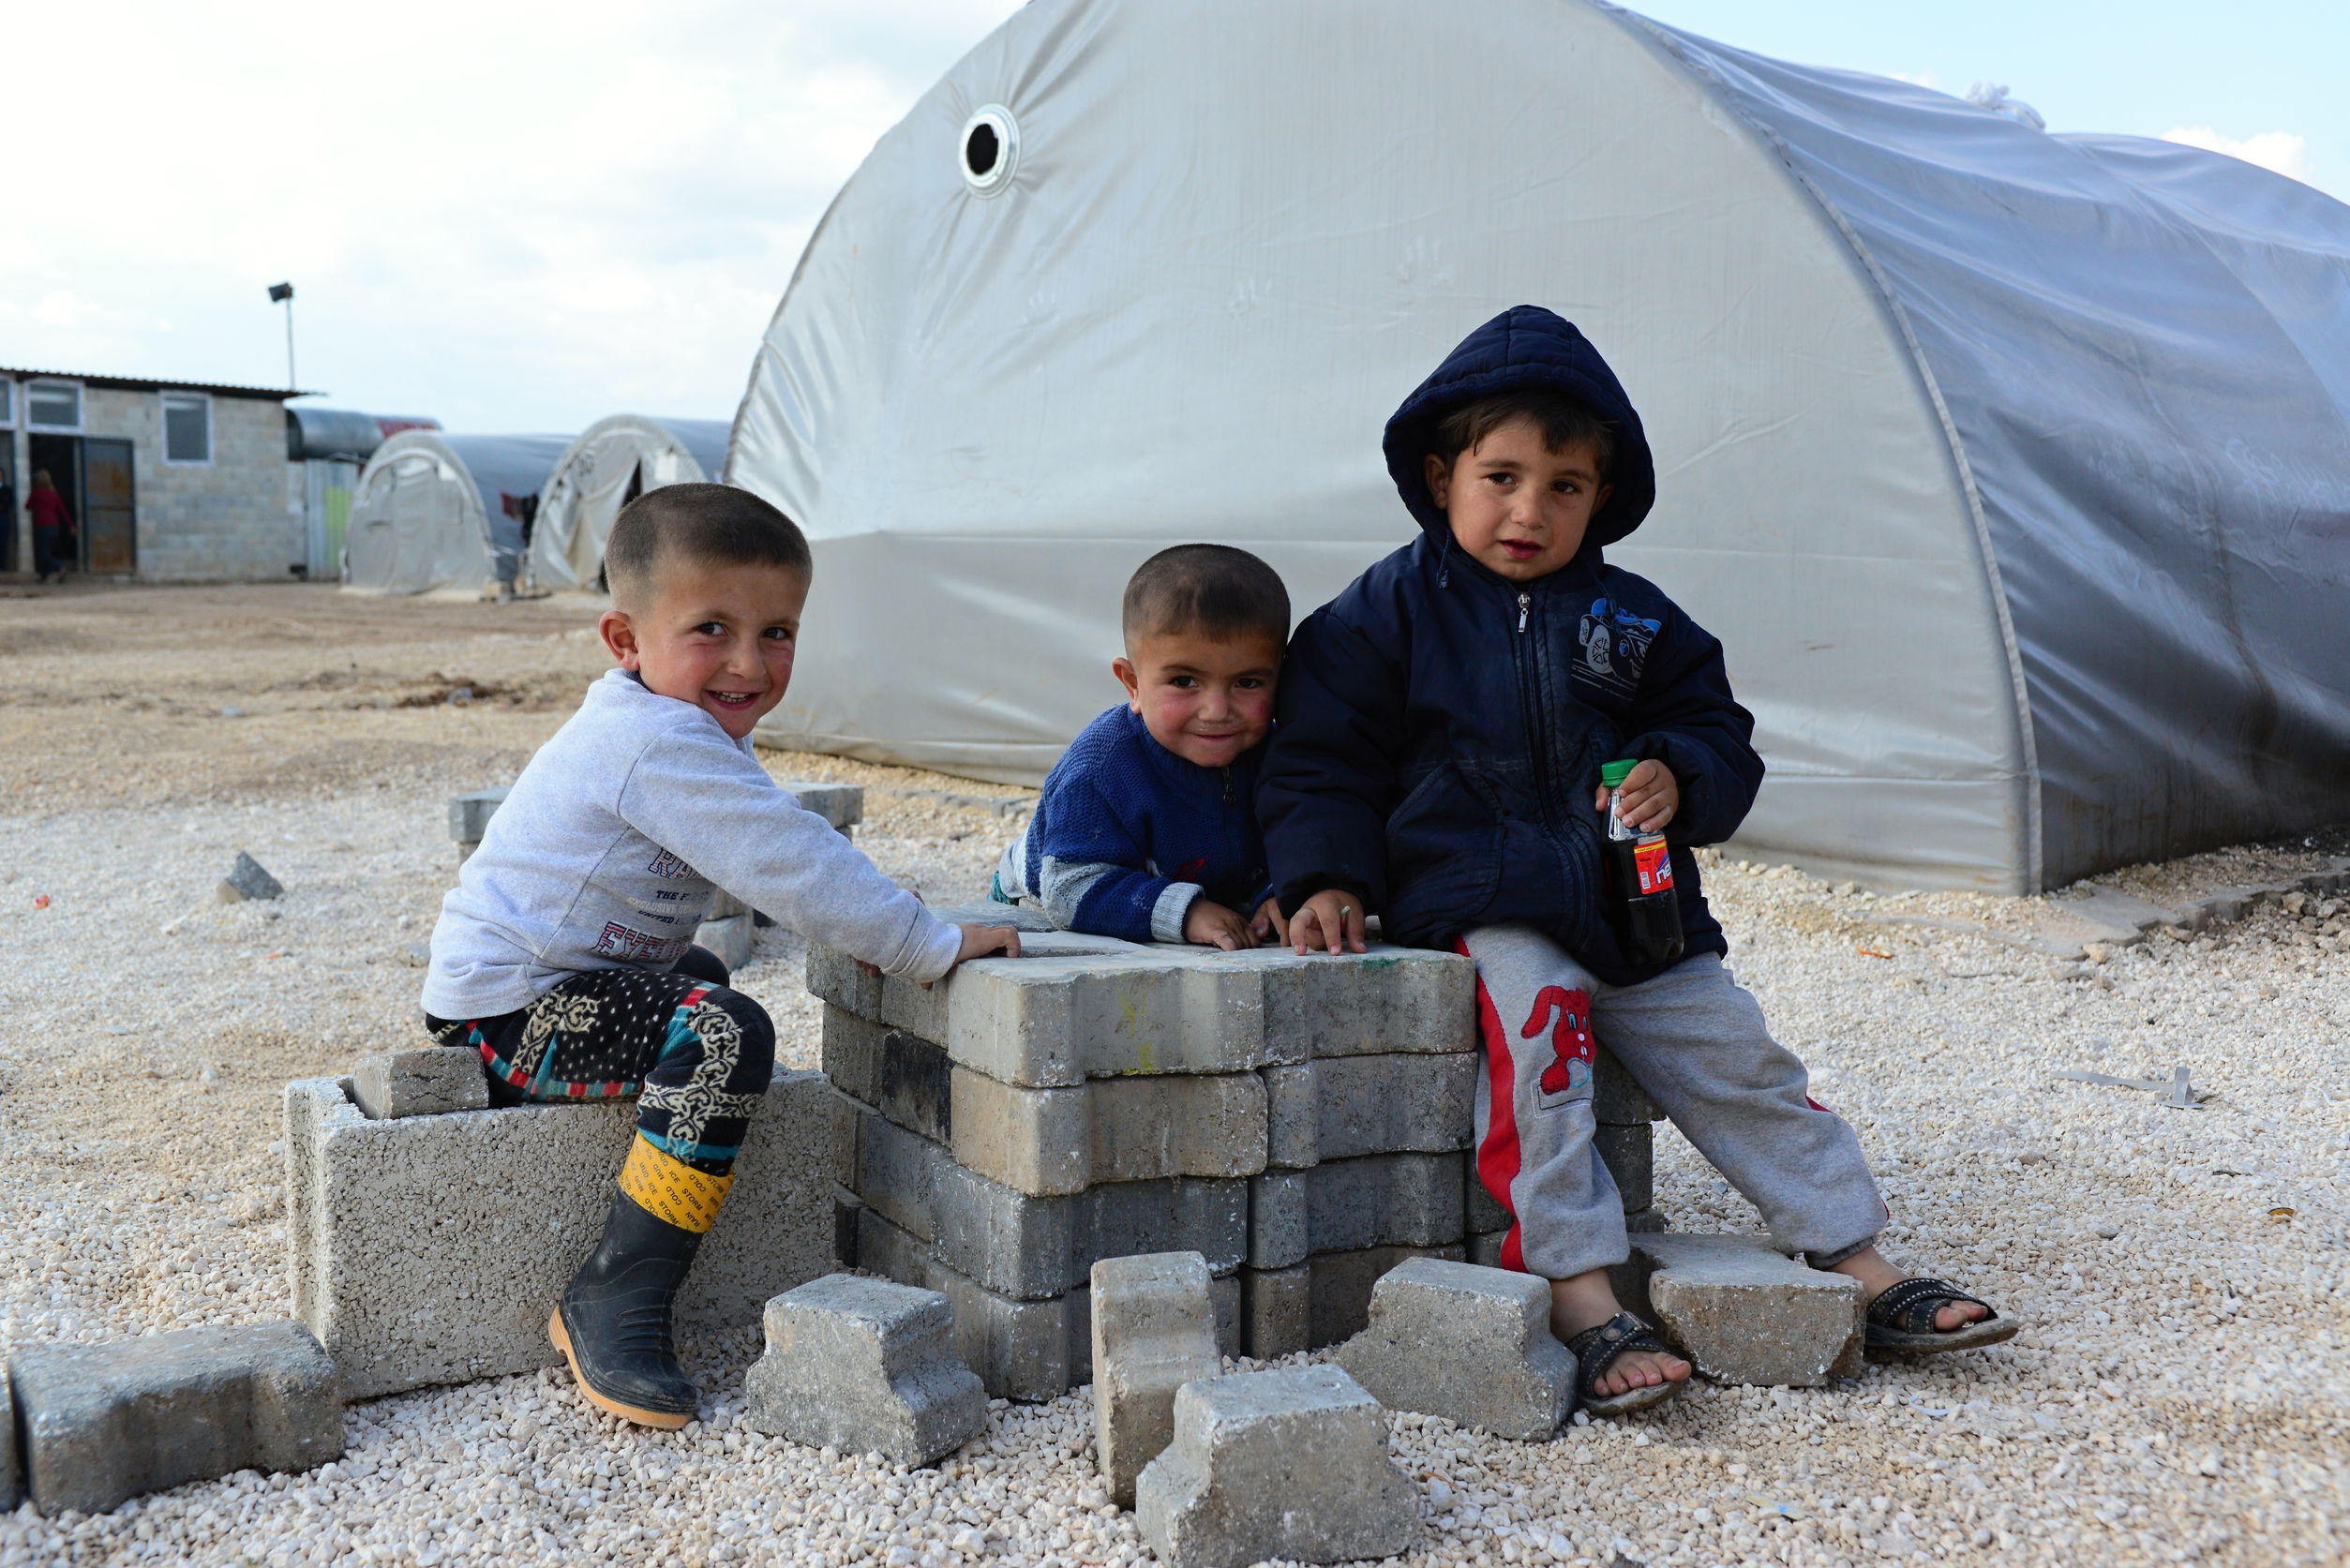 Syrian children from Kobane in a refugee camp in Suruc, Turkey. [Photo: radekprocyk / 123RF]